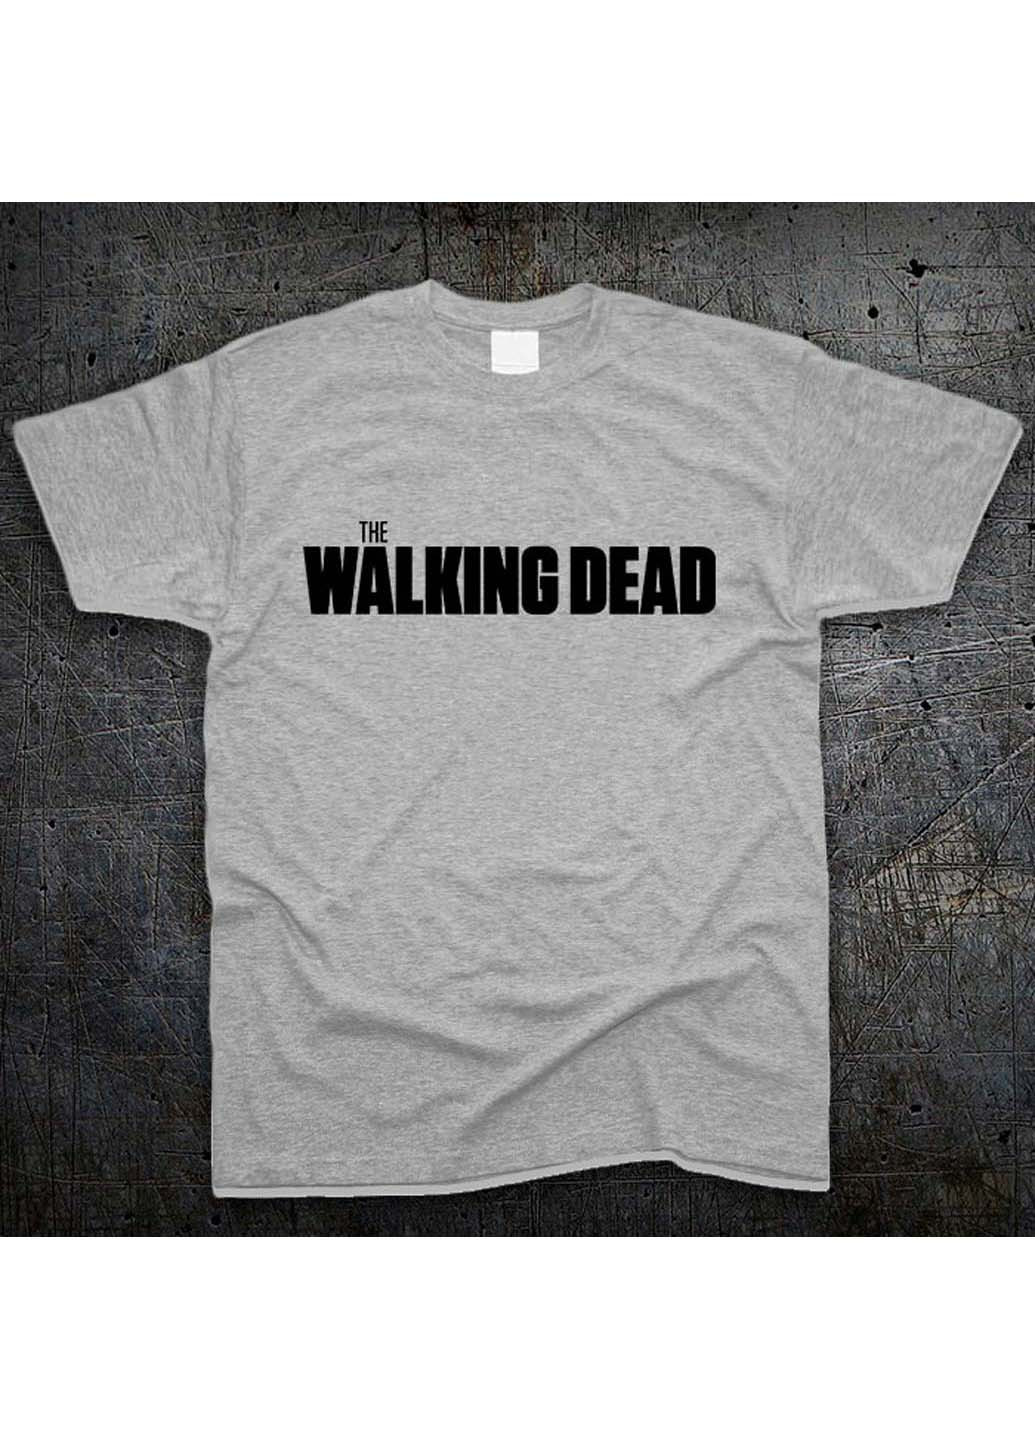 Серая футболка Fruit of the Loom Логотип Ходячие Мертвецы Logo The Walking Dead